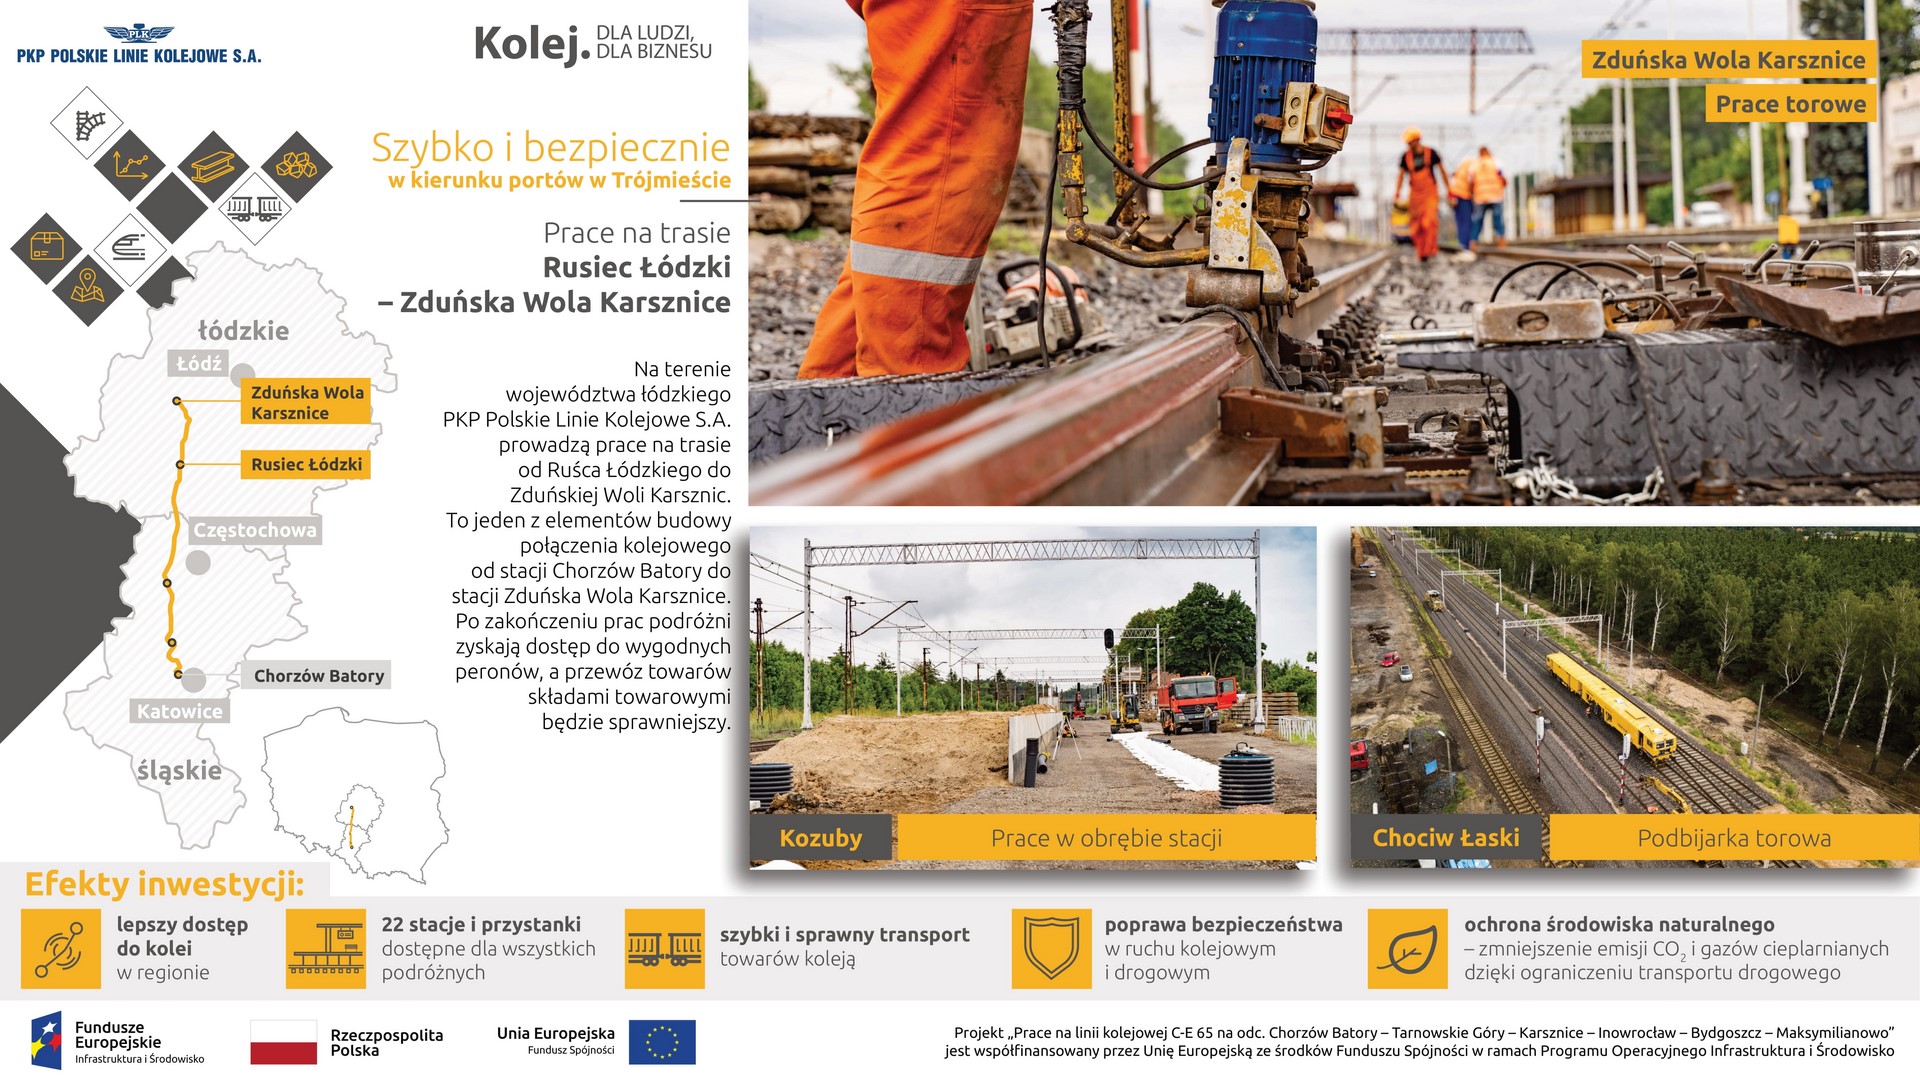 Infografika: po prawej znajdują się 3 zdjęcia z prac budowlanych w Zduńskiej Woli Karsznicach, Kozuby, Chociw Łaski.